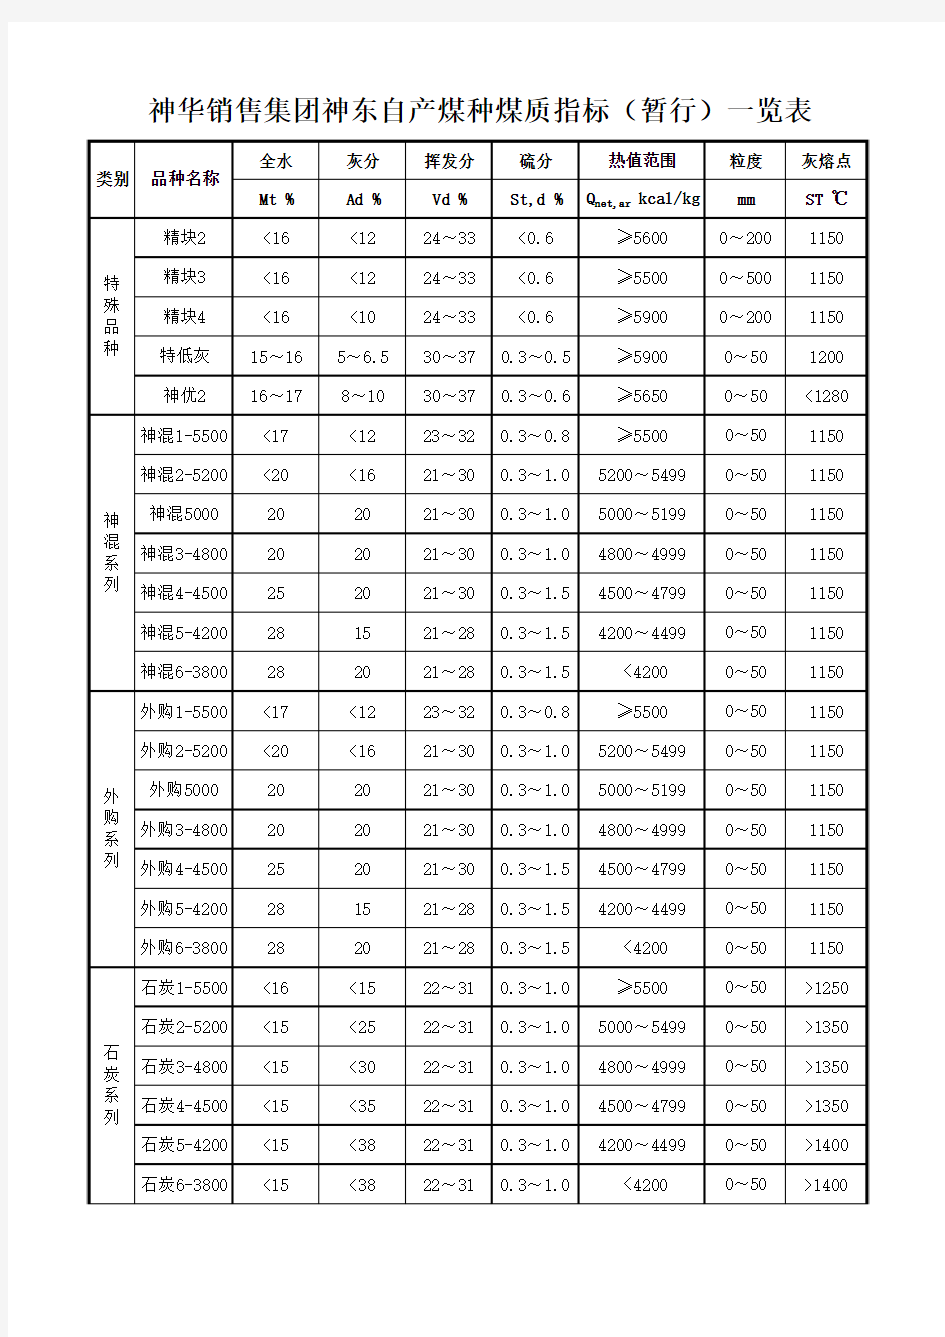 神华销售集团煤种煤质指标一览表